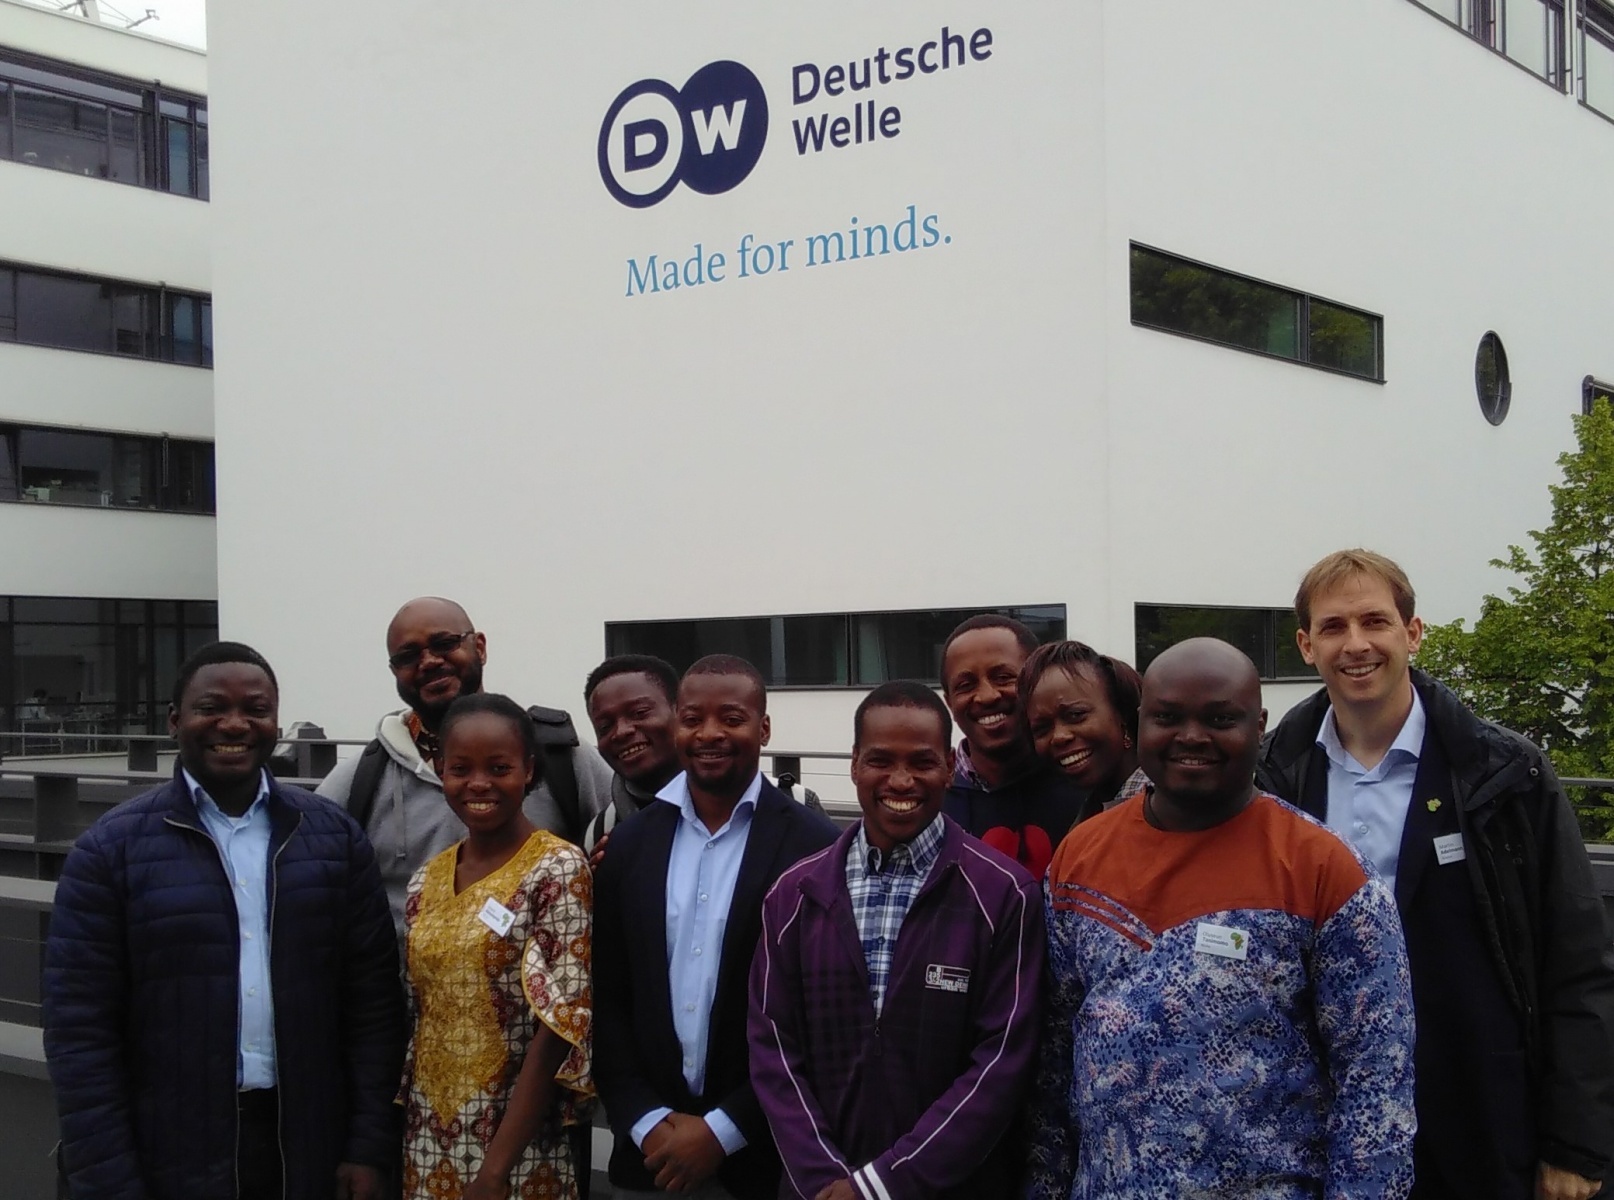 Fellows in front of Deutsche Welle